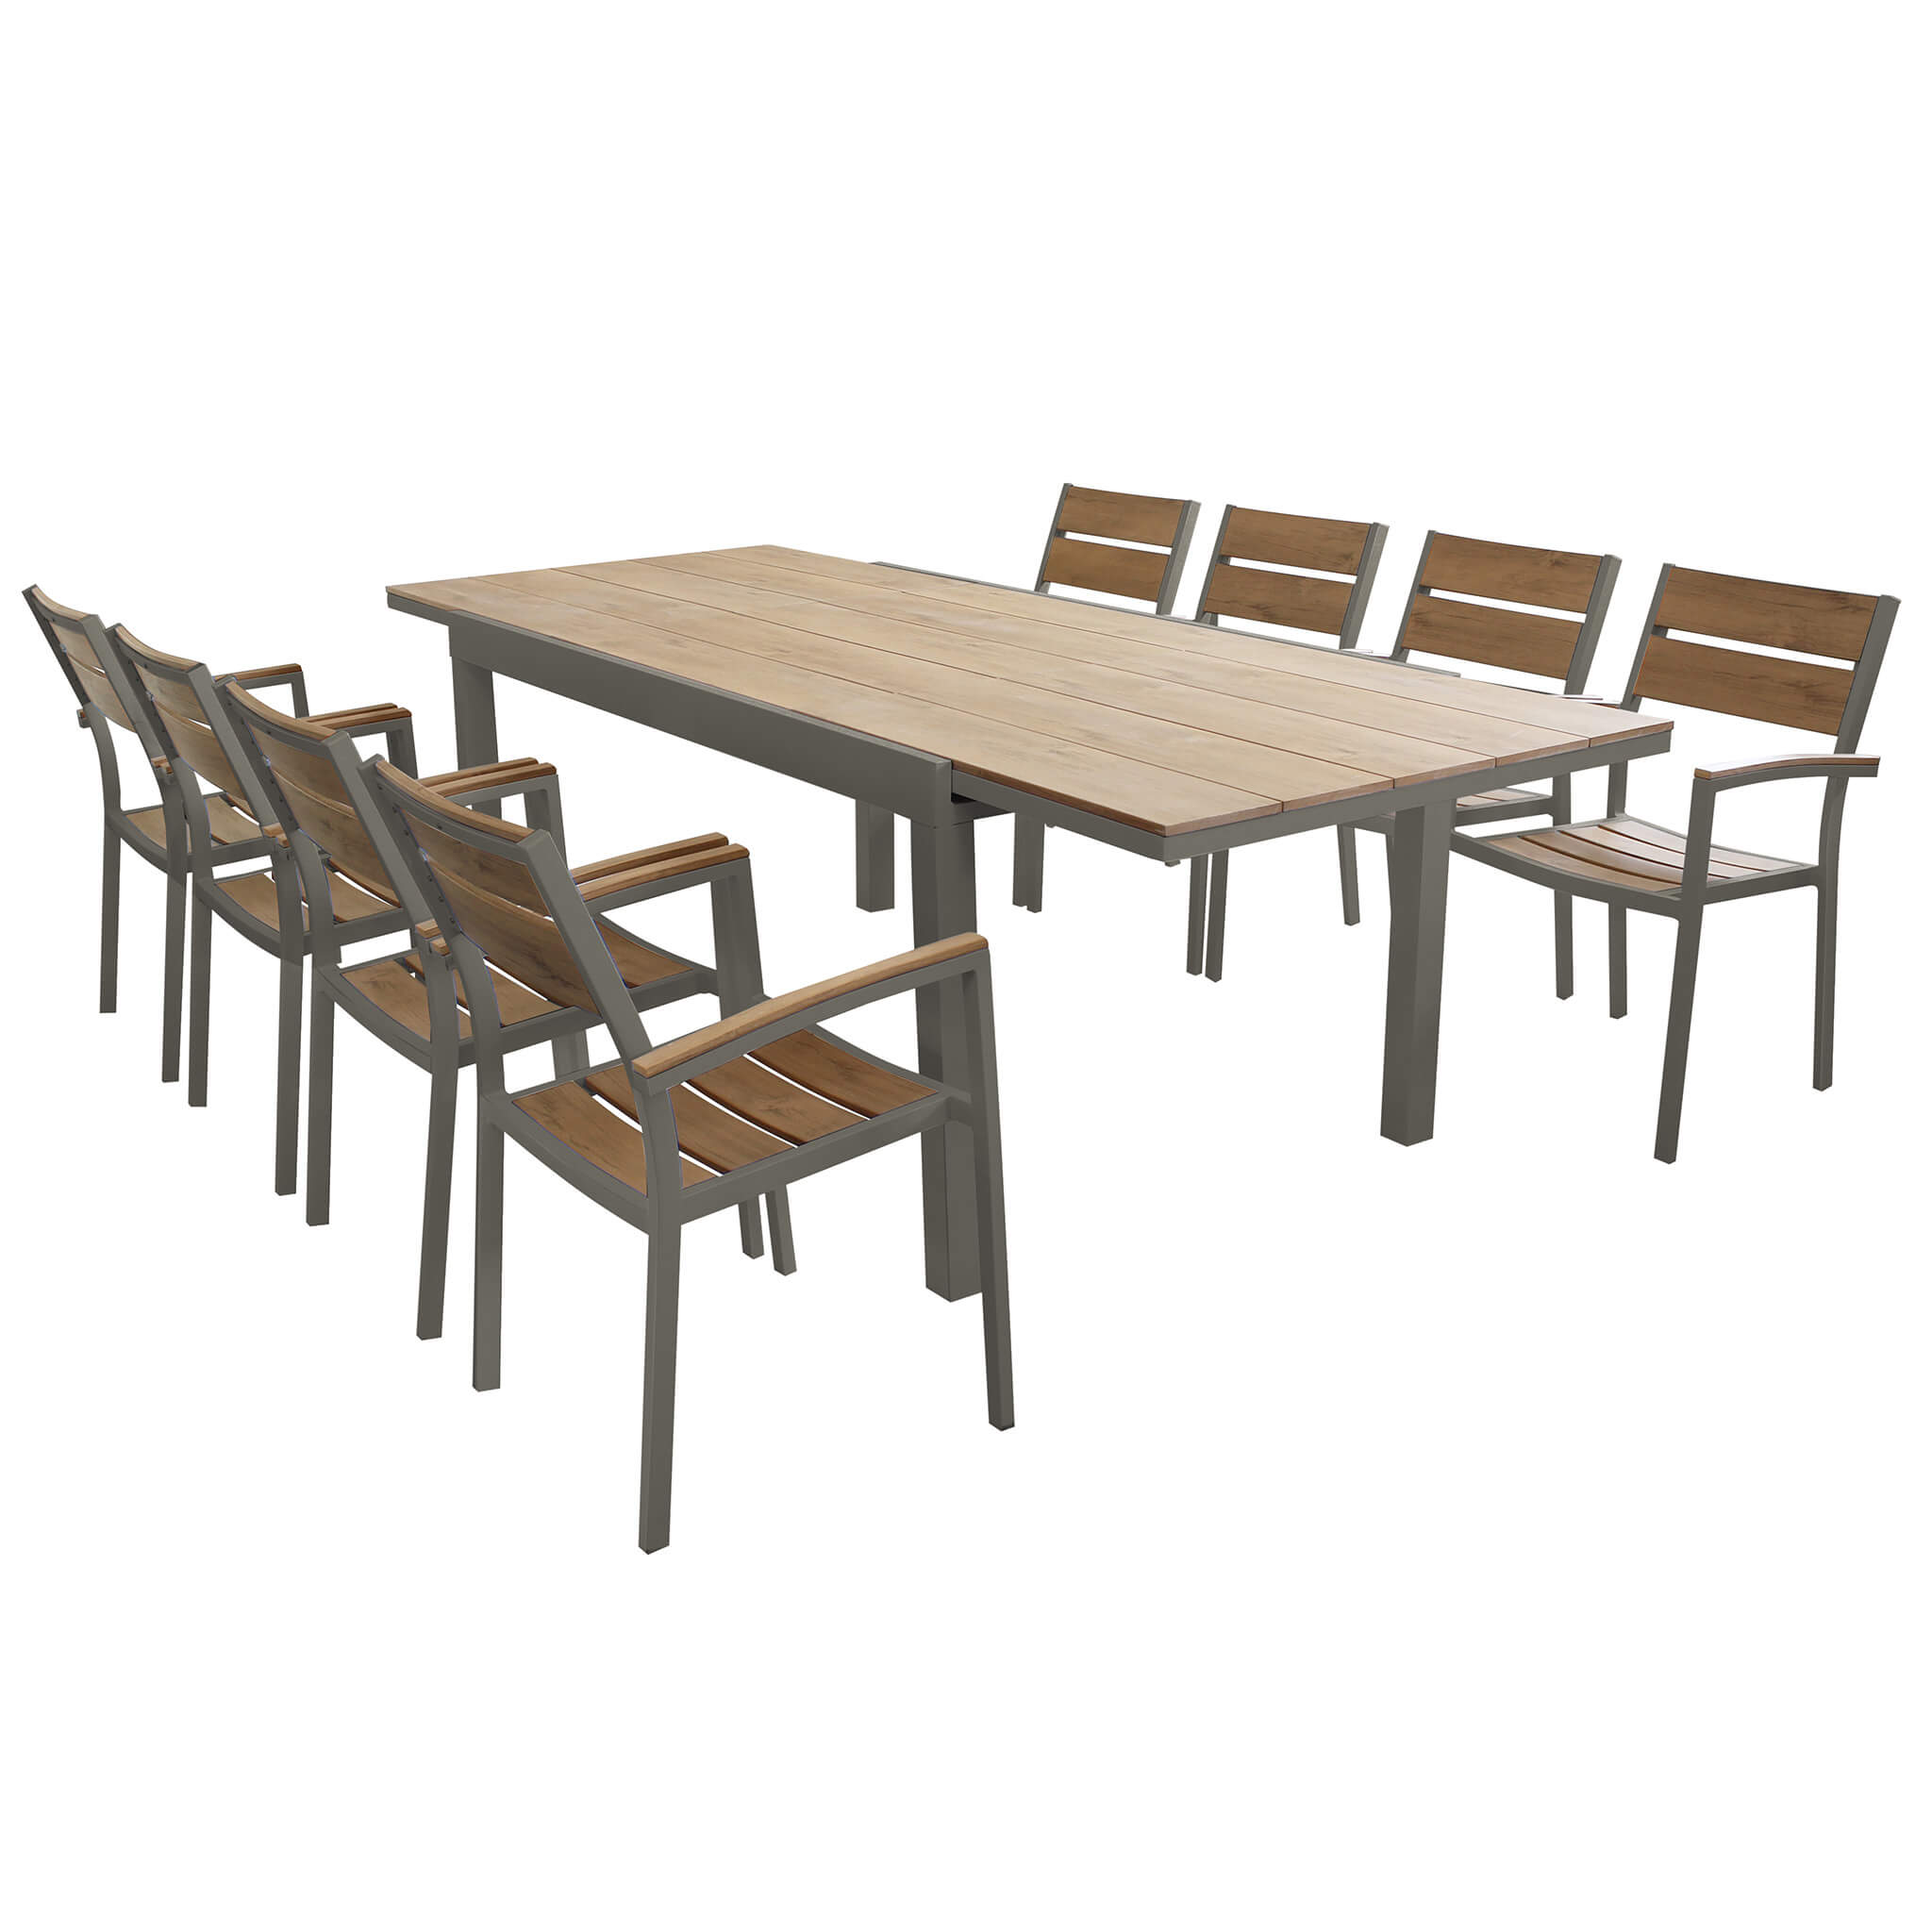 Milani Home VIDUUS - set tavolo in alluminio cm 160/240 x 95 x 75 h con 8 sedute